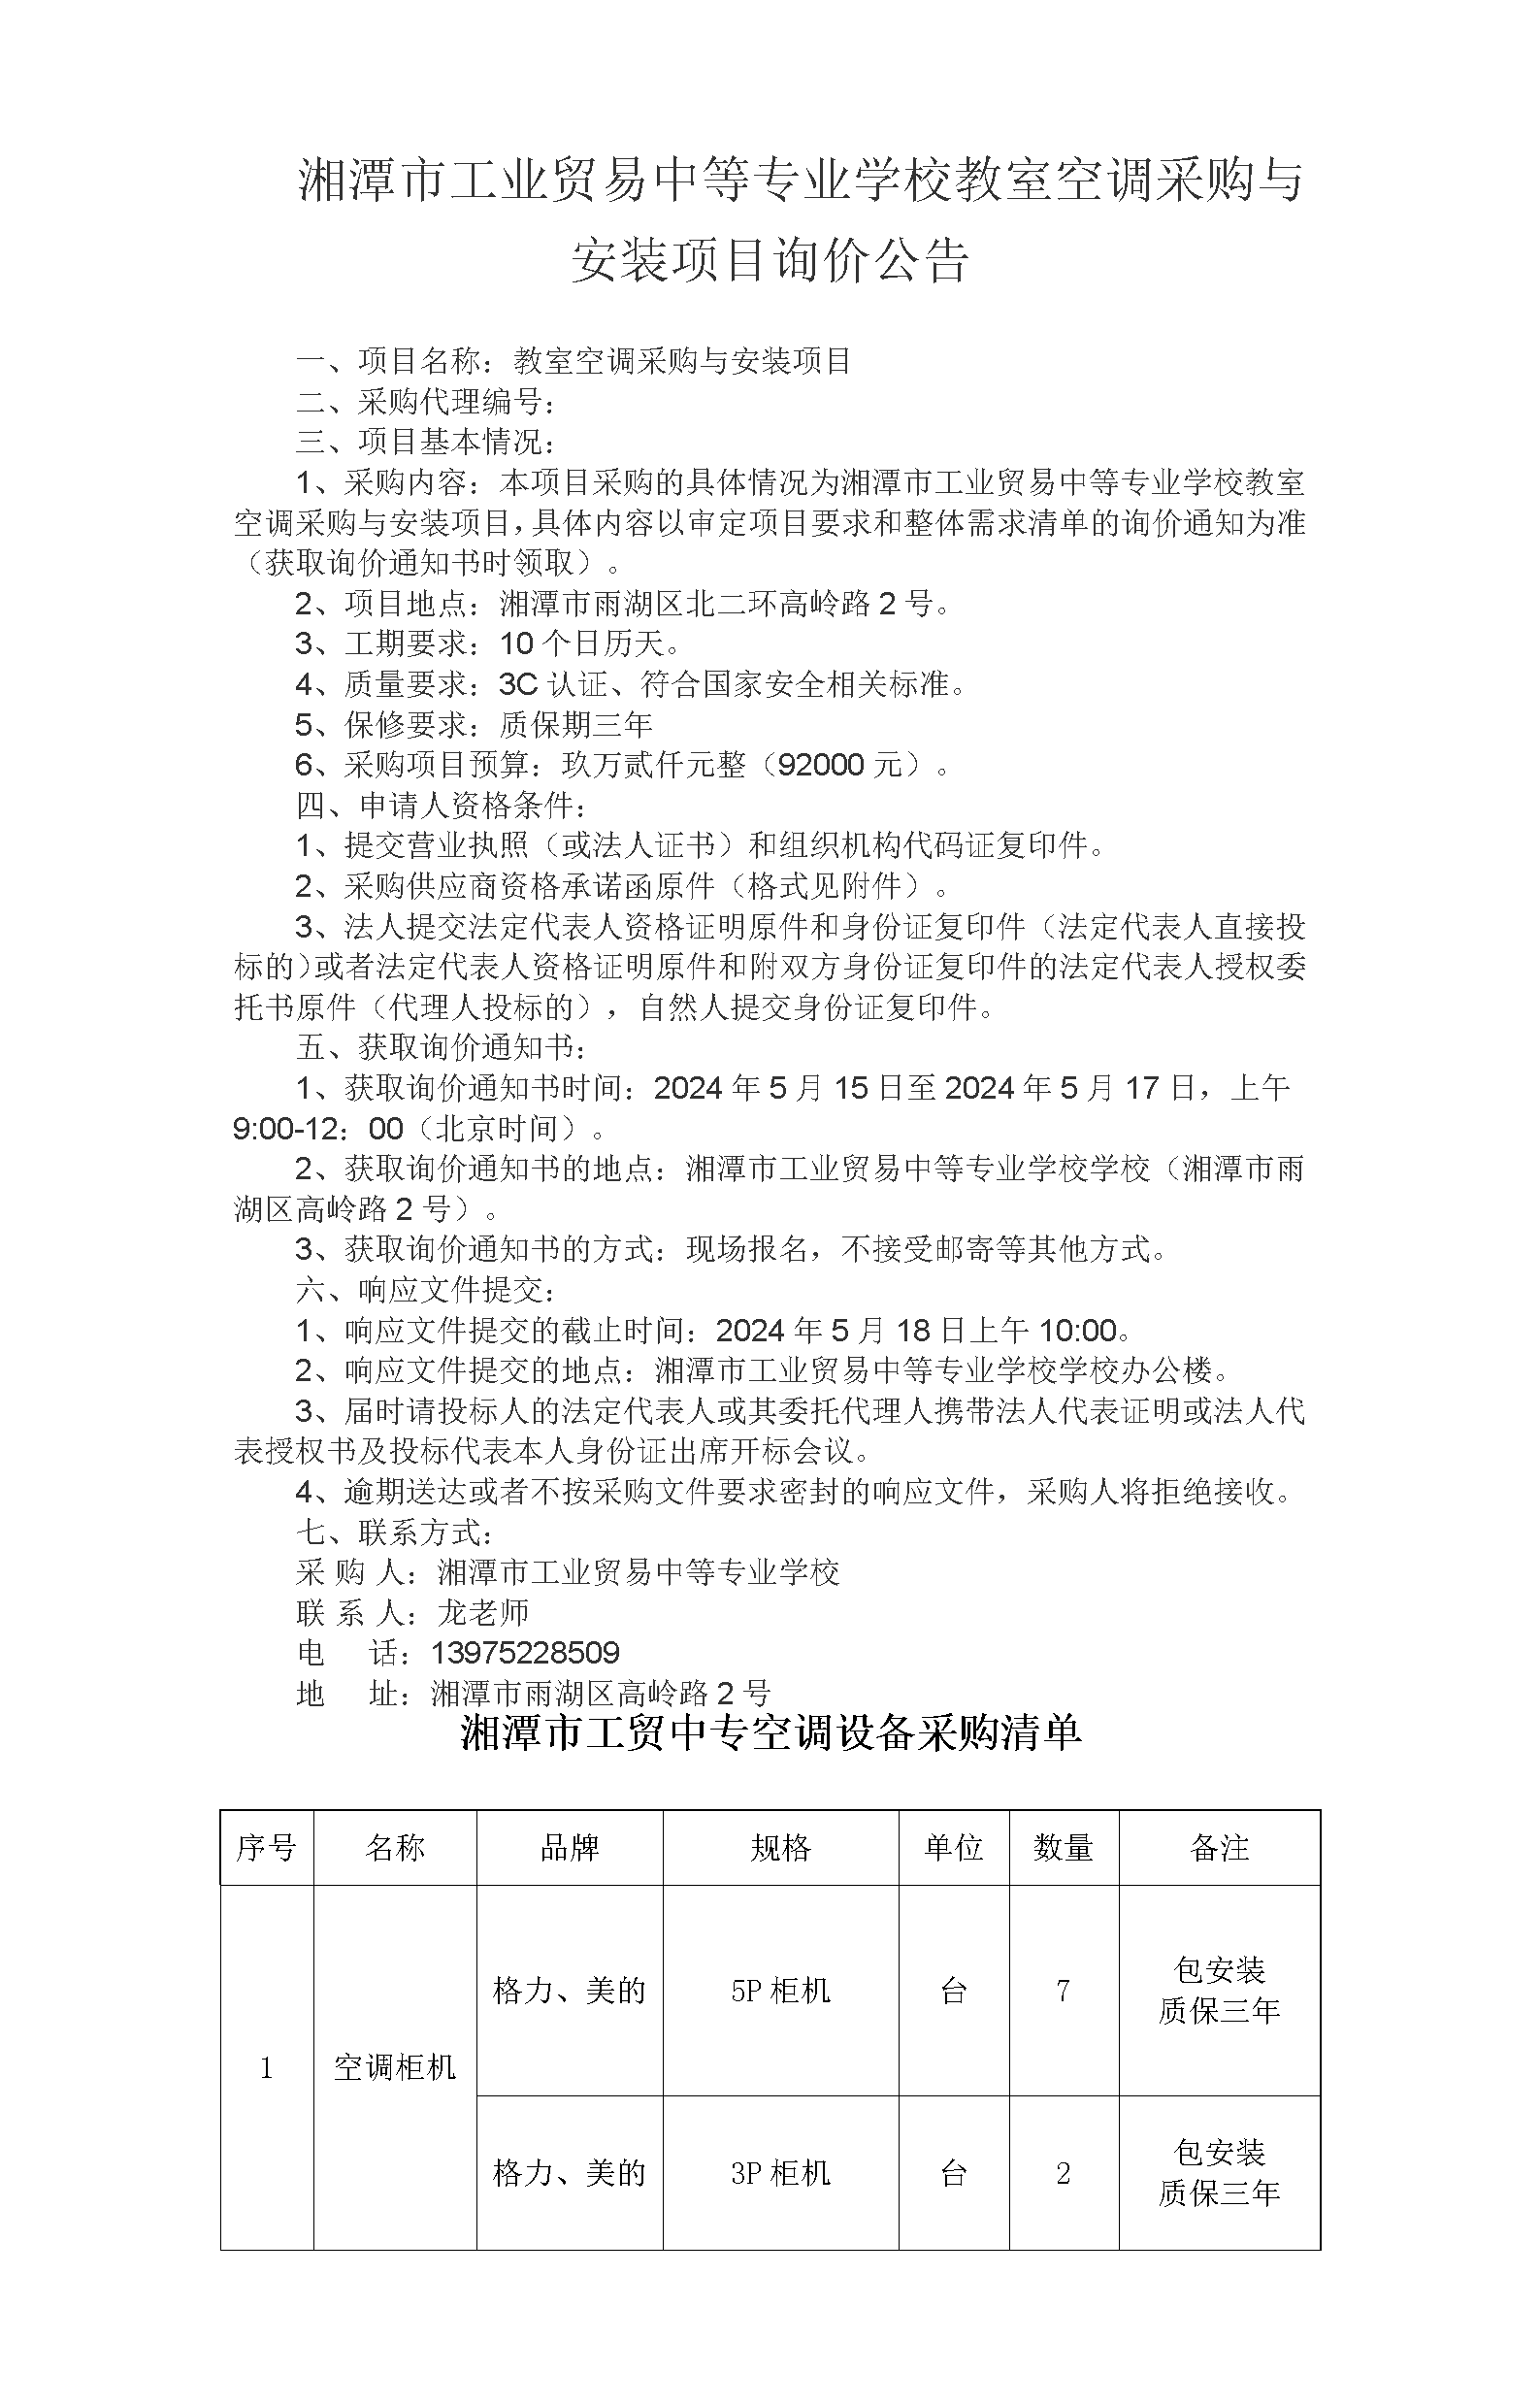 湘潭市工业贸易中等专业学校教室空调采购与安装项目询价公告_01.png